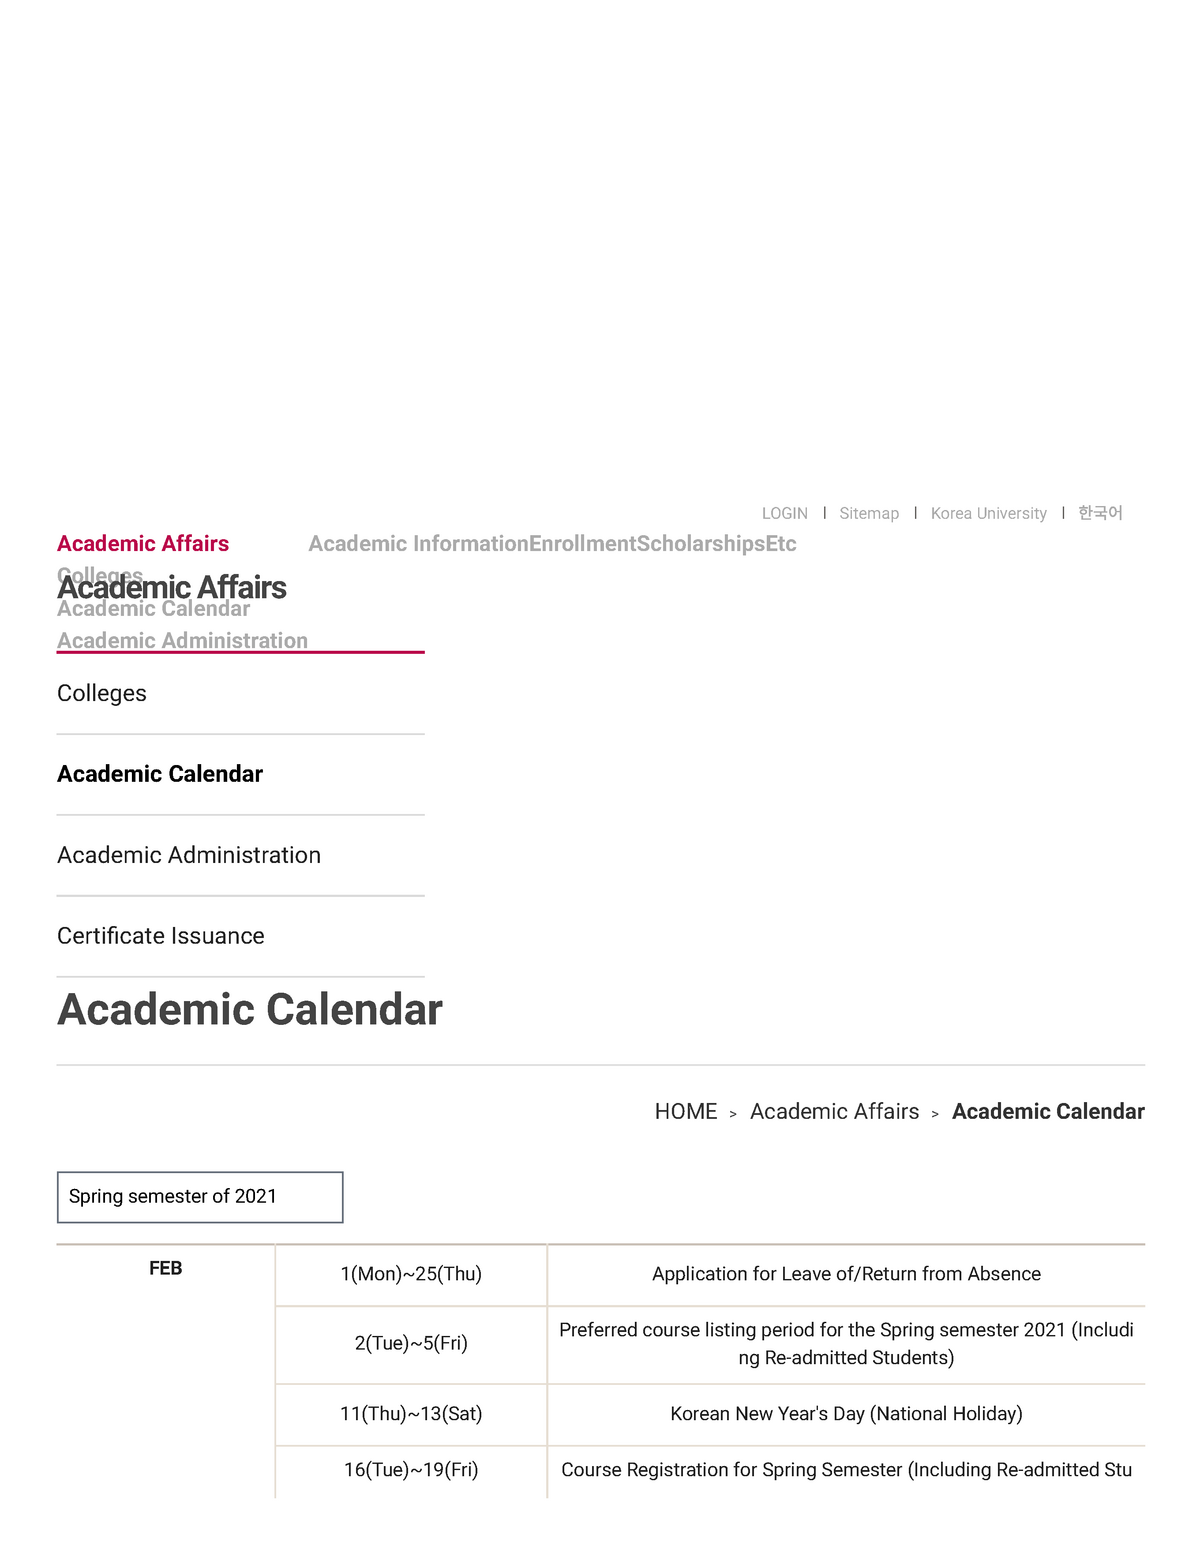 Academic Calendar KU Lecture notes 1 LOGIN l Sitemap l Korea